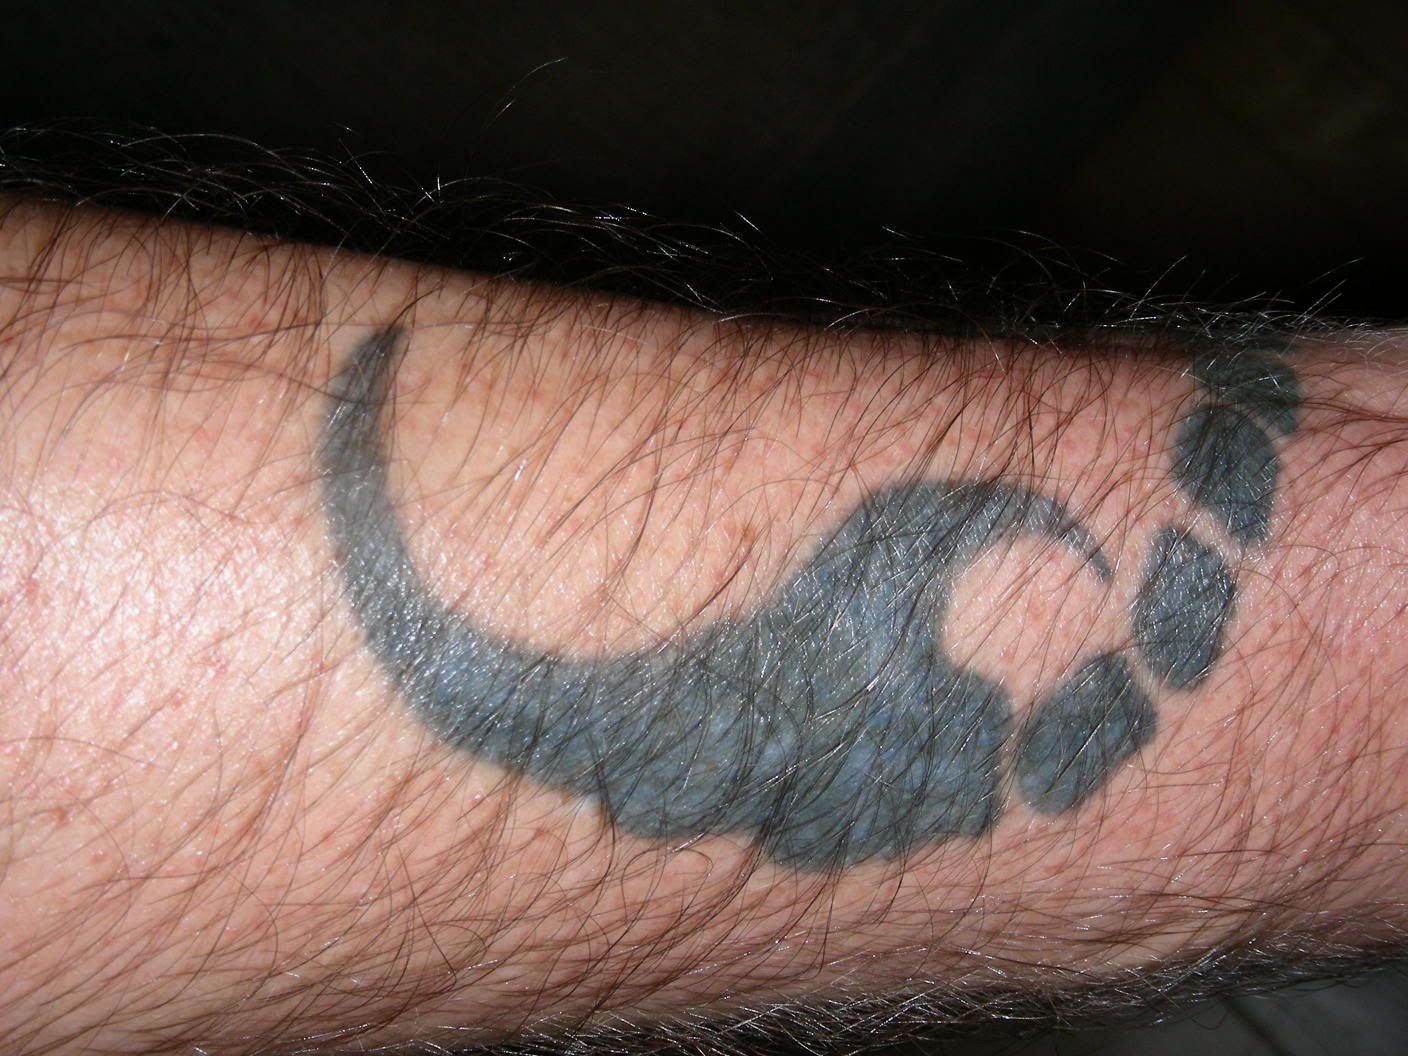 full arm tribal tattoo designs